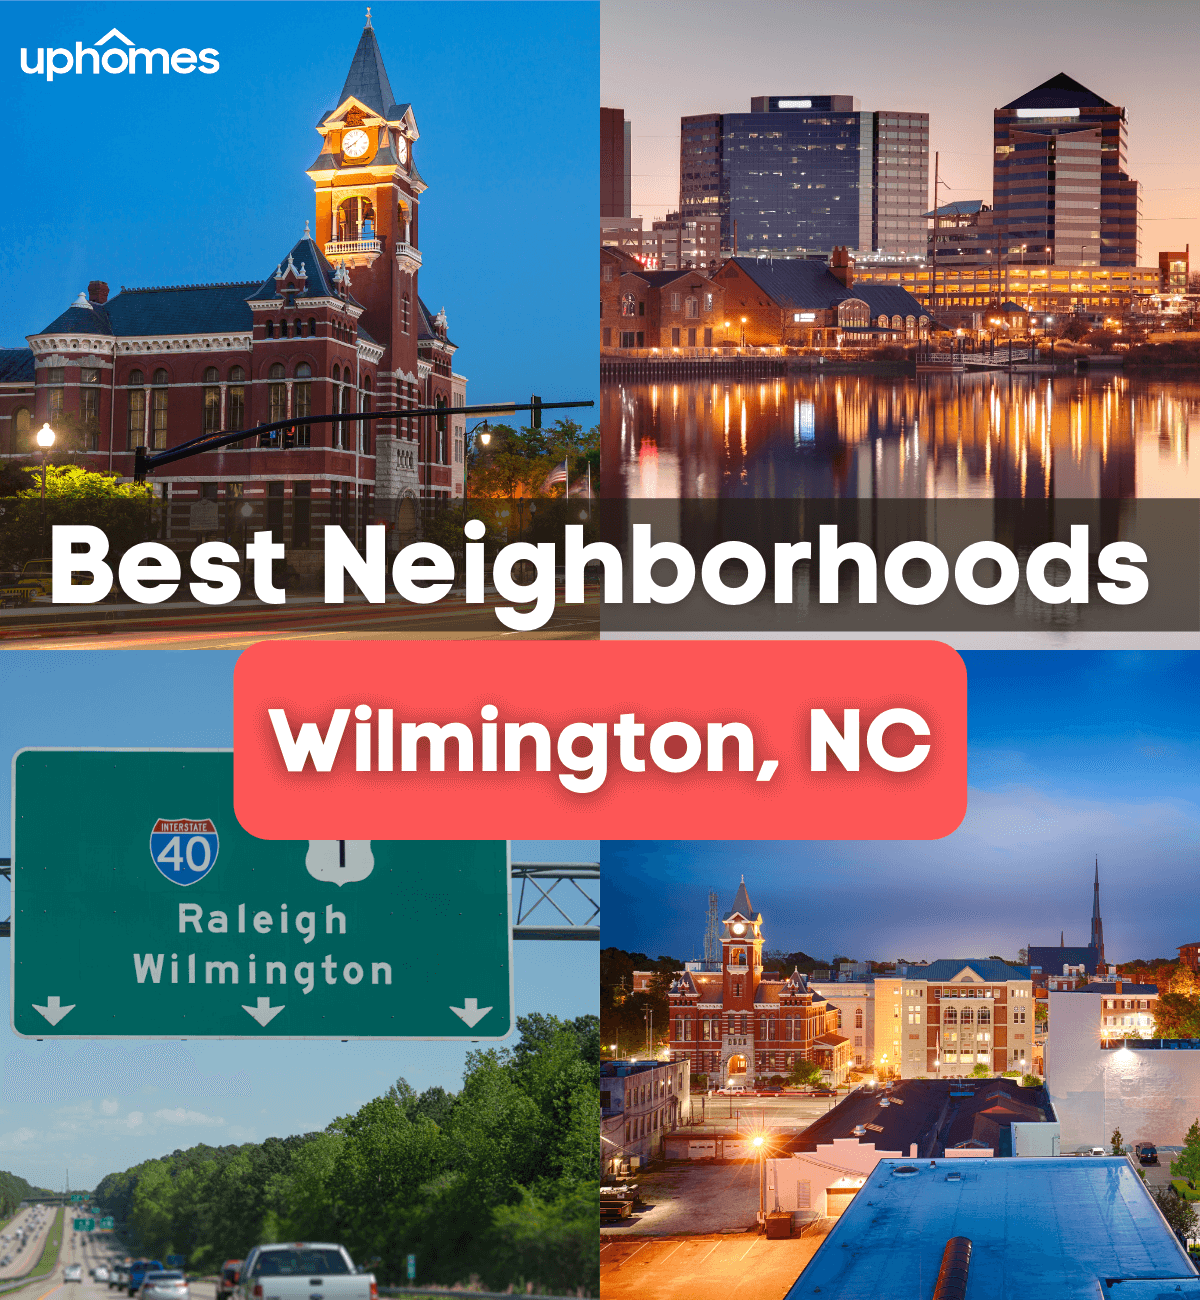 Best Neighborhoods in Wilmington, NC - What are the Best Neighborhoods in Wilmington NC?